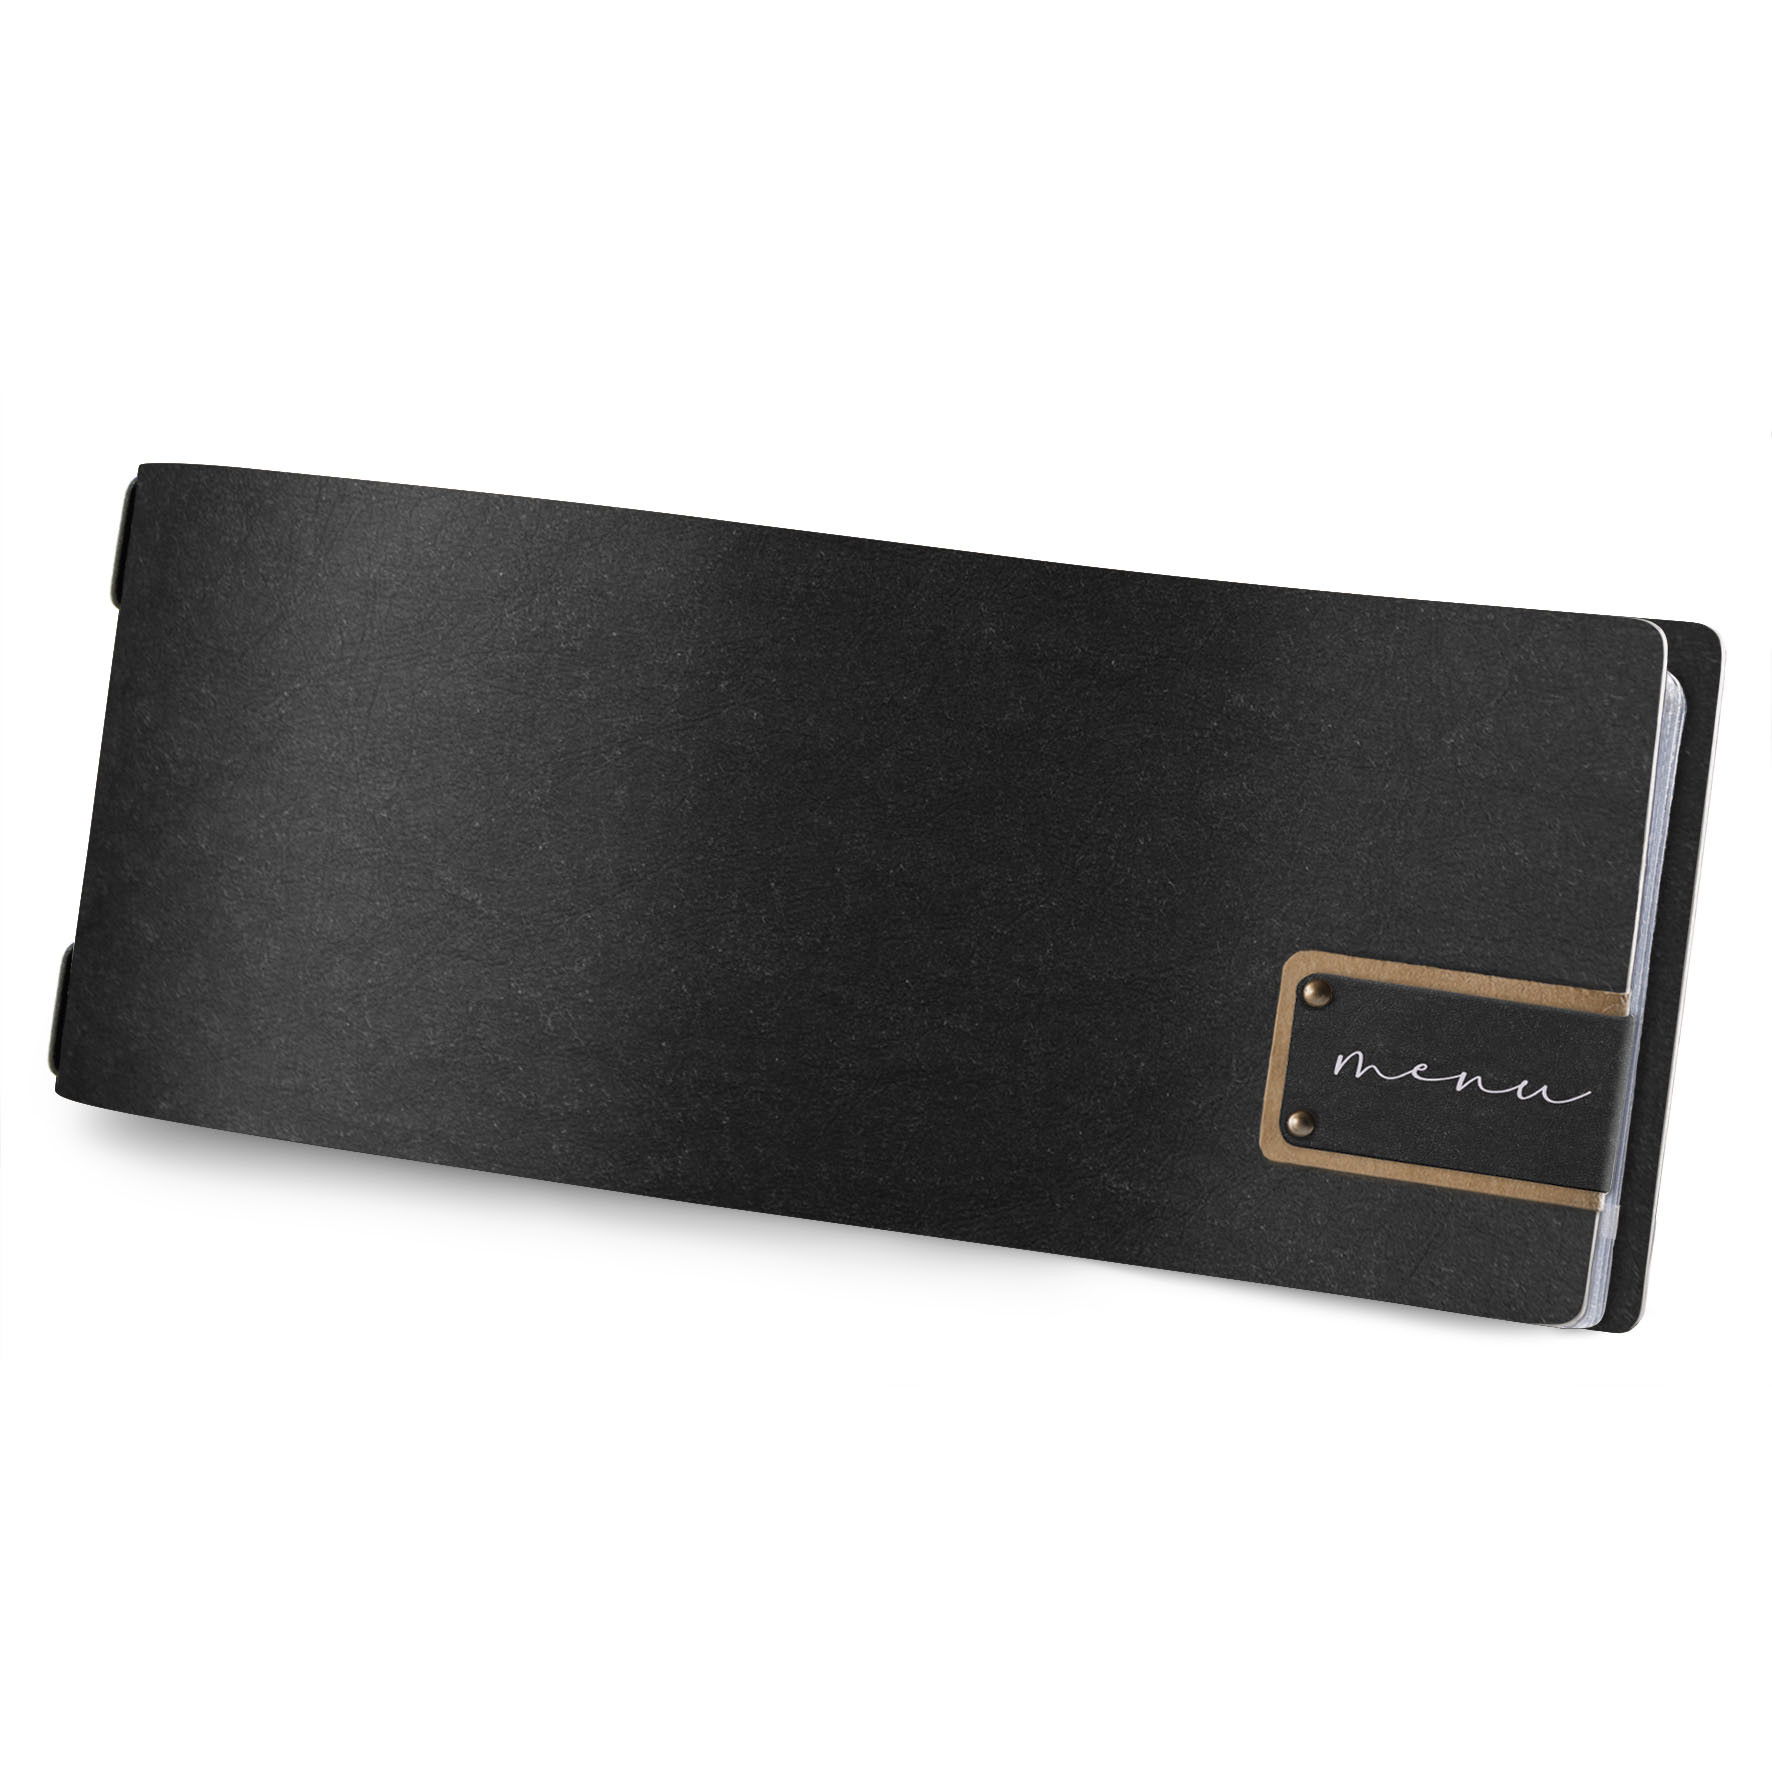 Porta Menu 23,2x31,8 cm (A4) etichetta PATCH nera menu 2 buste (4  facciate) elastico nero ECOMODA NATURALE sp. 0.6